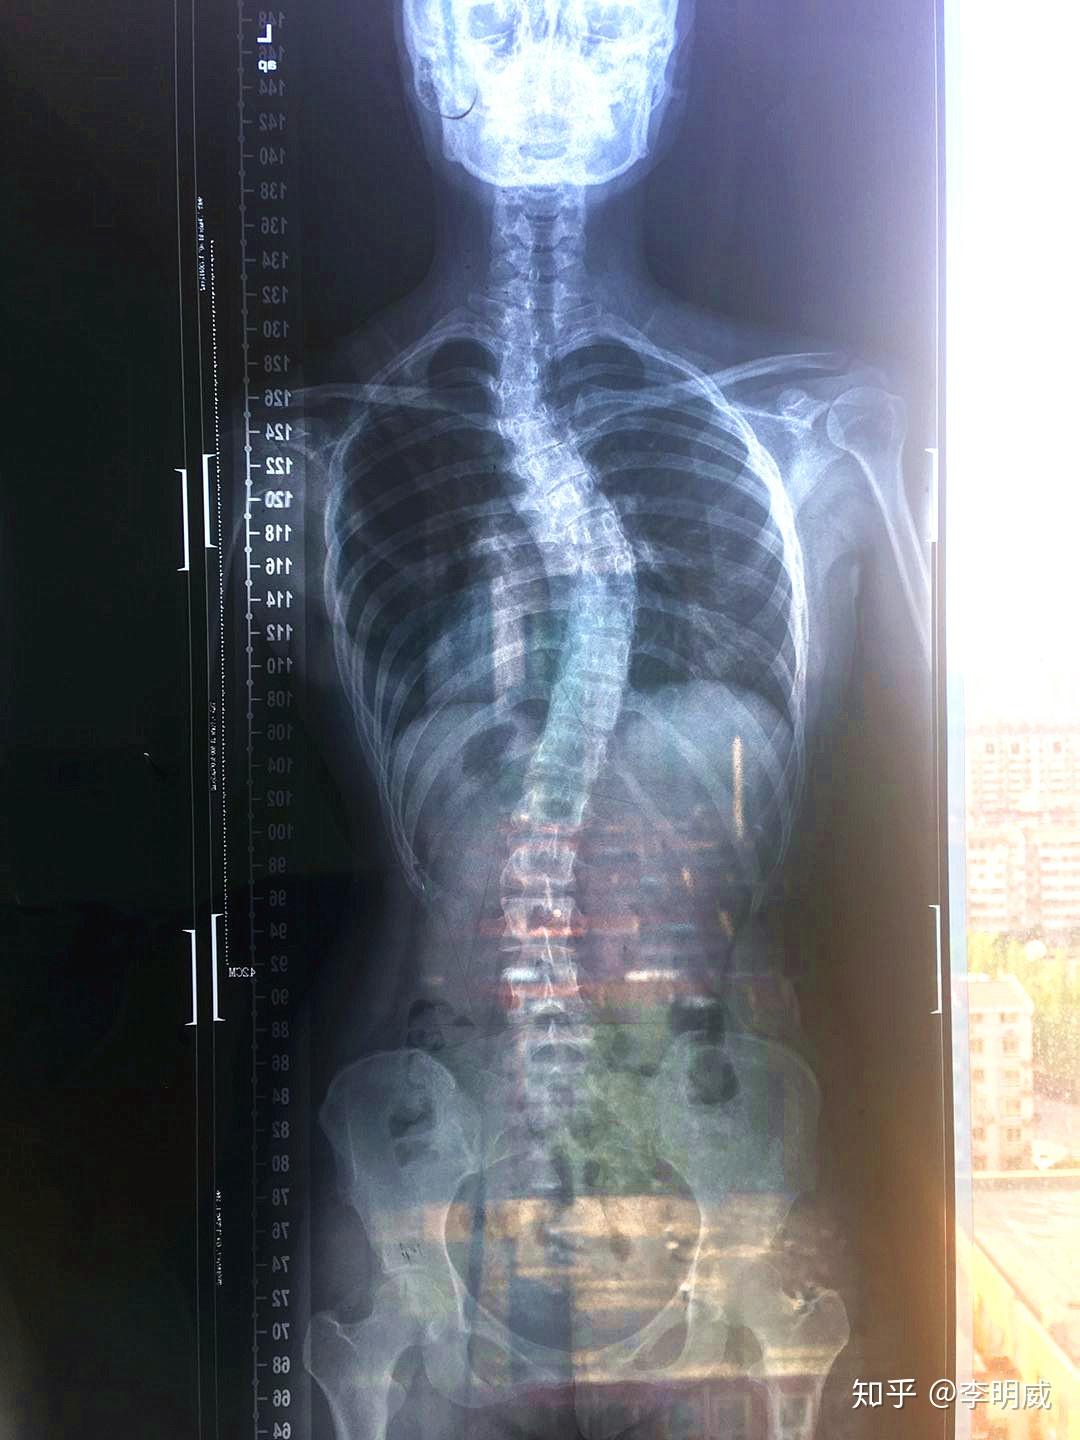 脊柱侧弯案例分析：3个月减少5°（附X光片、训练建议） - 知乎